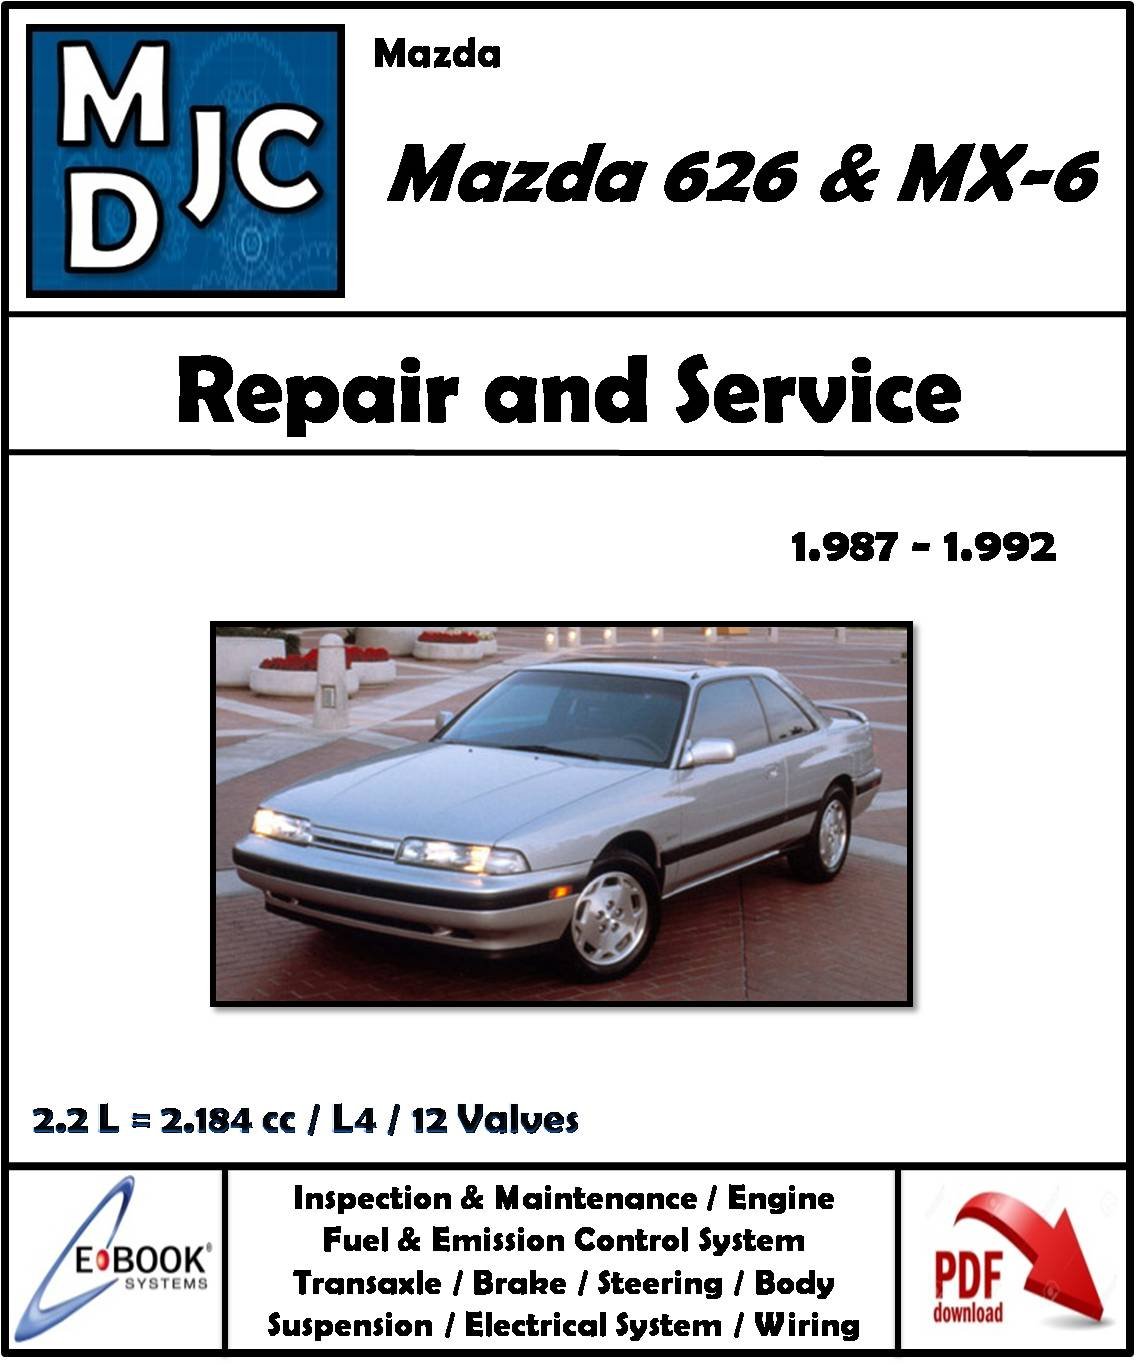 Mazda 626 - MX-6 ( 1987 - 1992 )